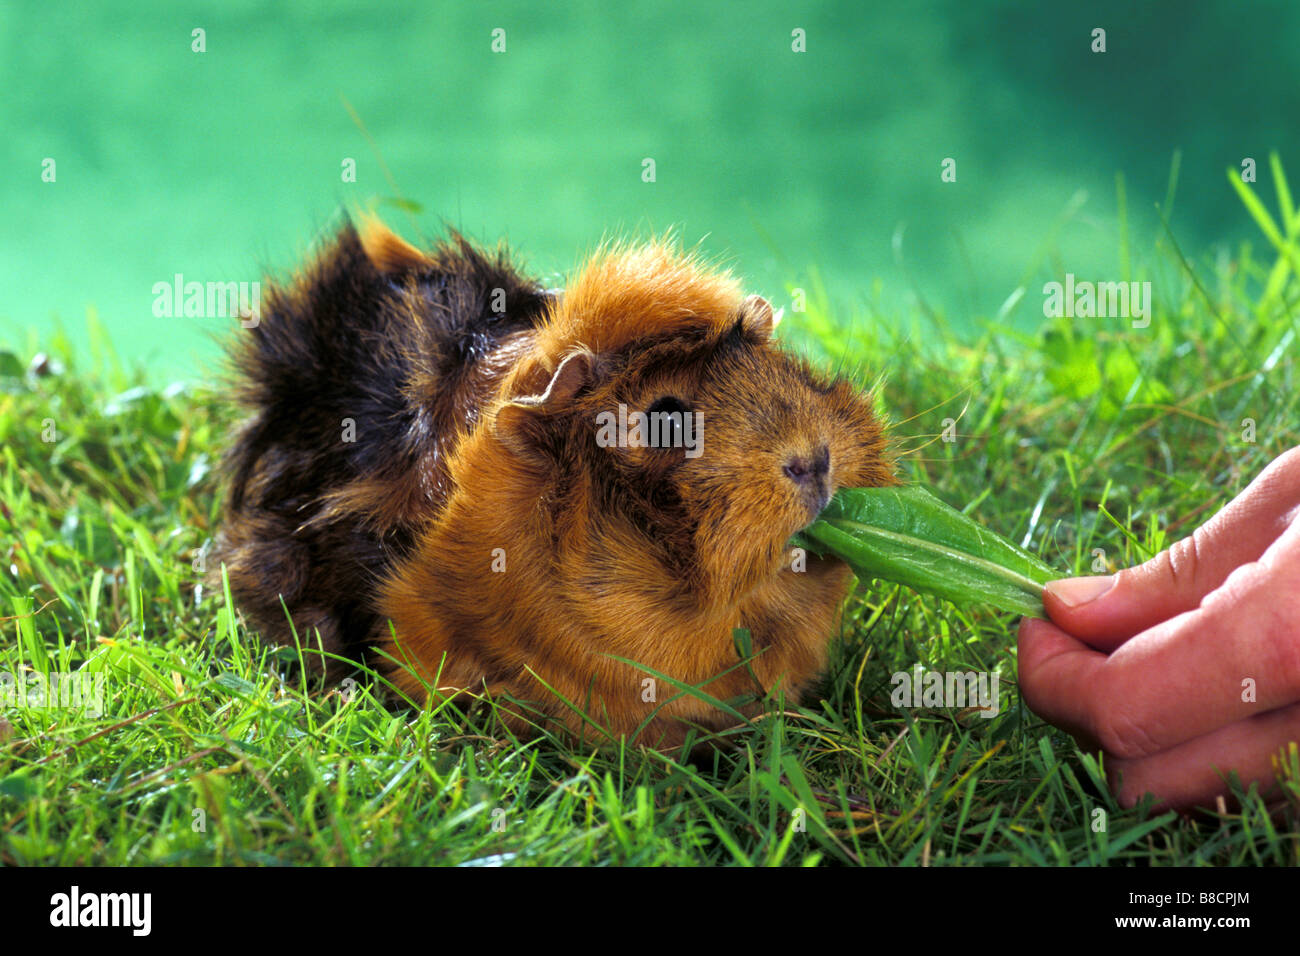 Cochon domestique, Cavie (Cavia porcellus), race : Rosette, seule personne mangeant une feuille tenue par une main Banque D'Images